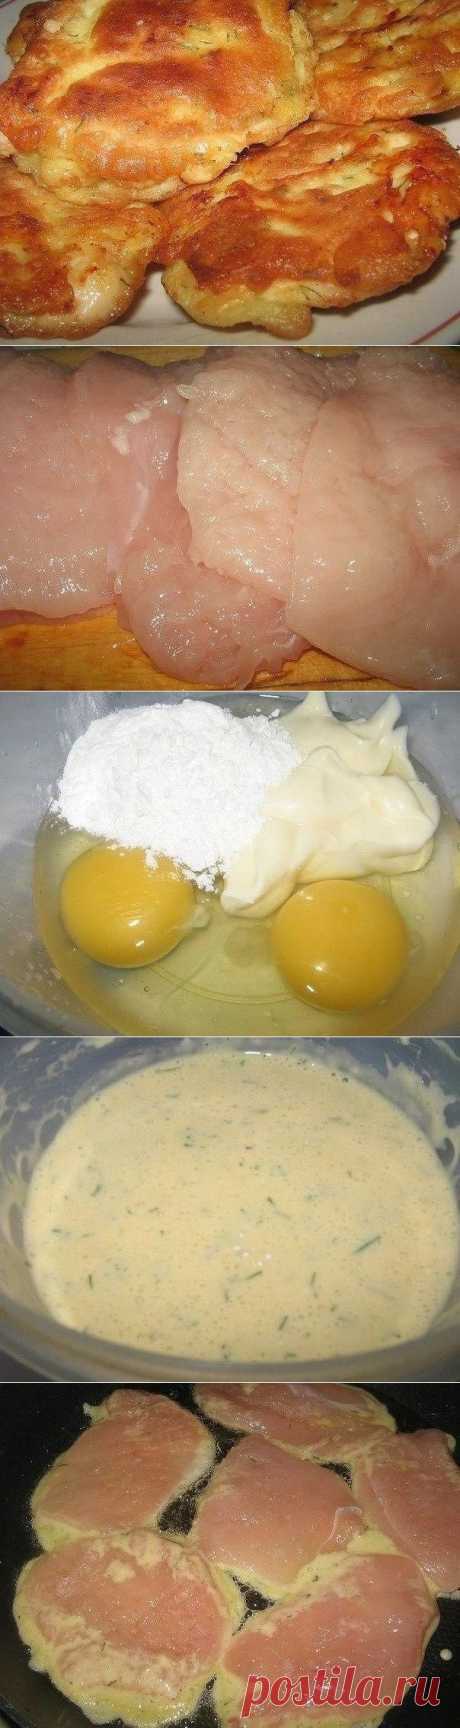 Как приготовить куриные отбивные в кляре с сыром. - рецепт, ингридиенты и фотографии